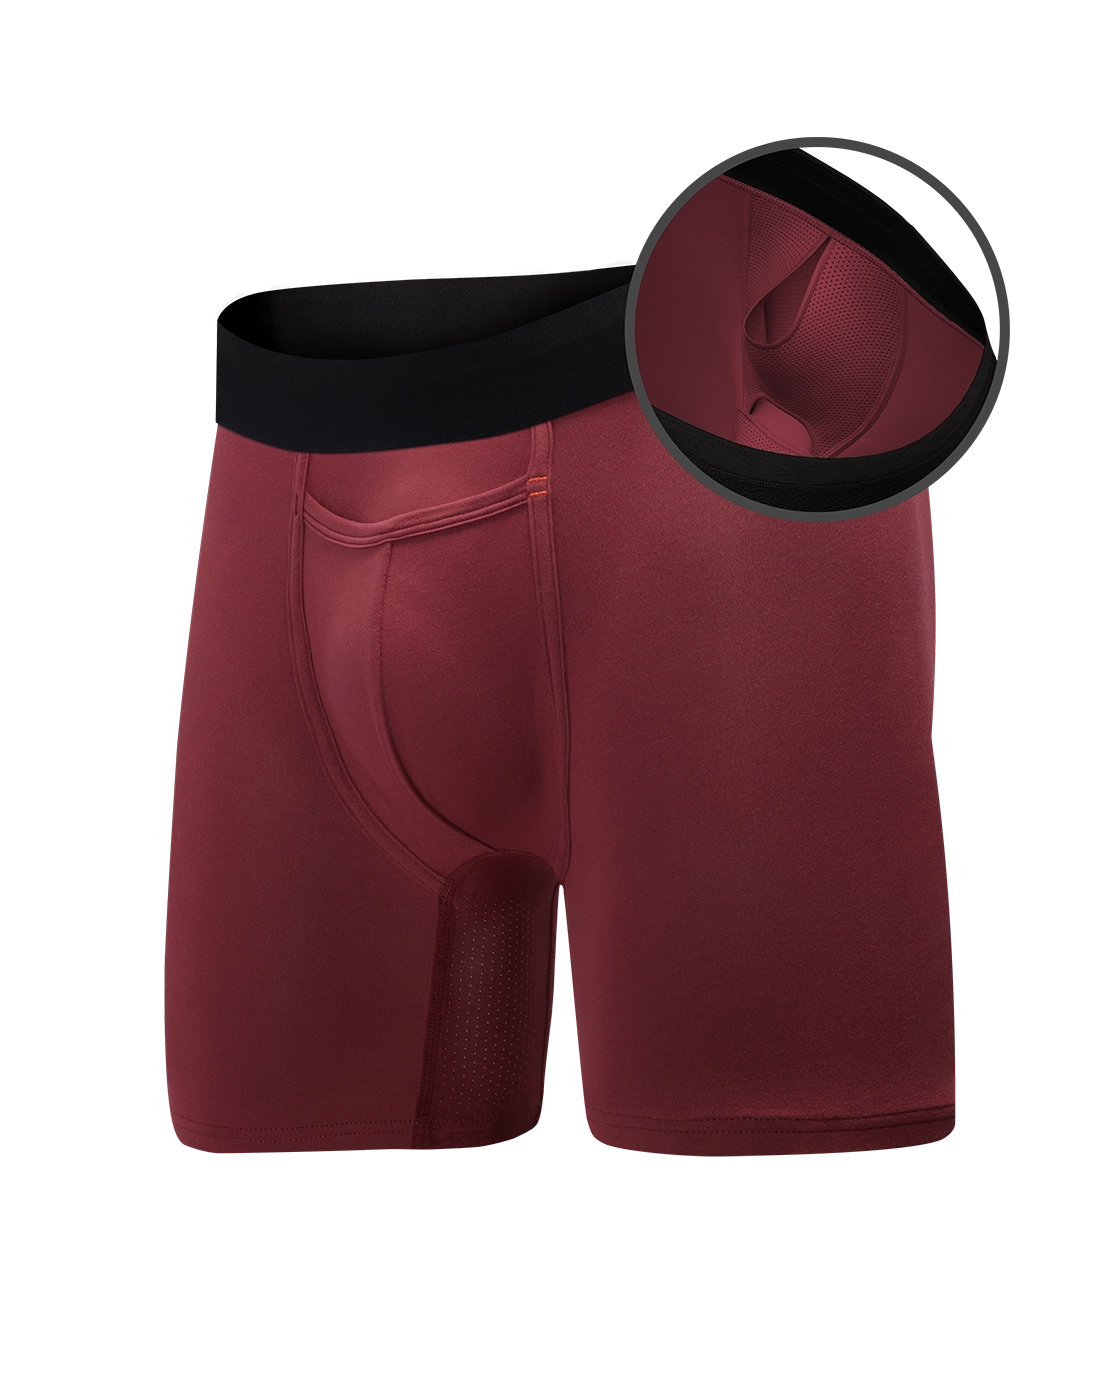 Battle Royale: Polyester Underwear VS Bamboo Underwear - Which Is Best?